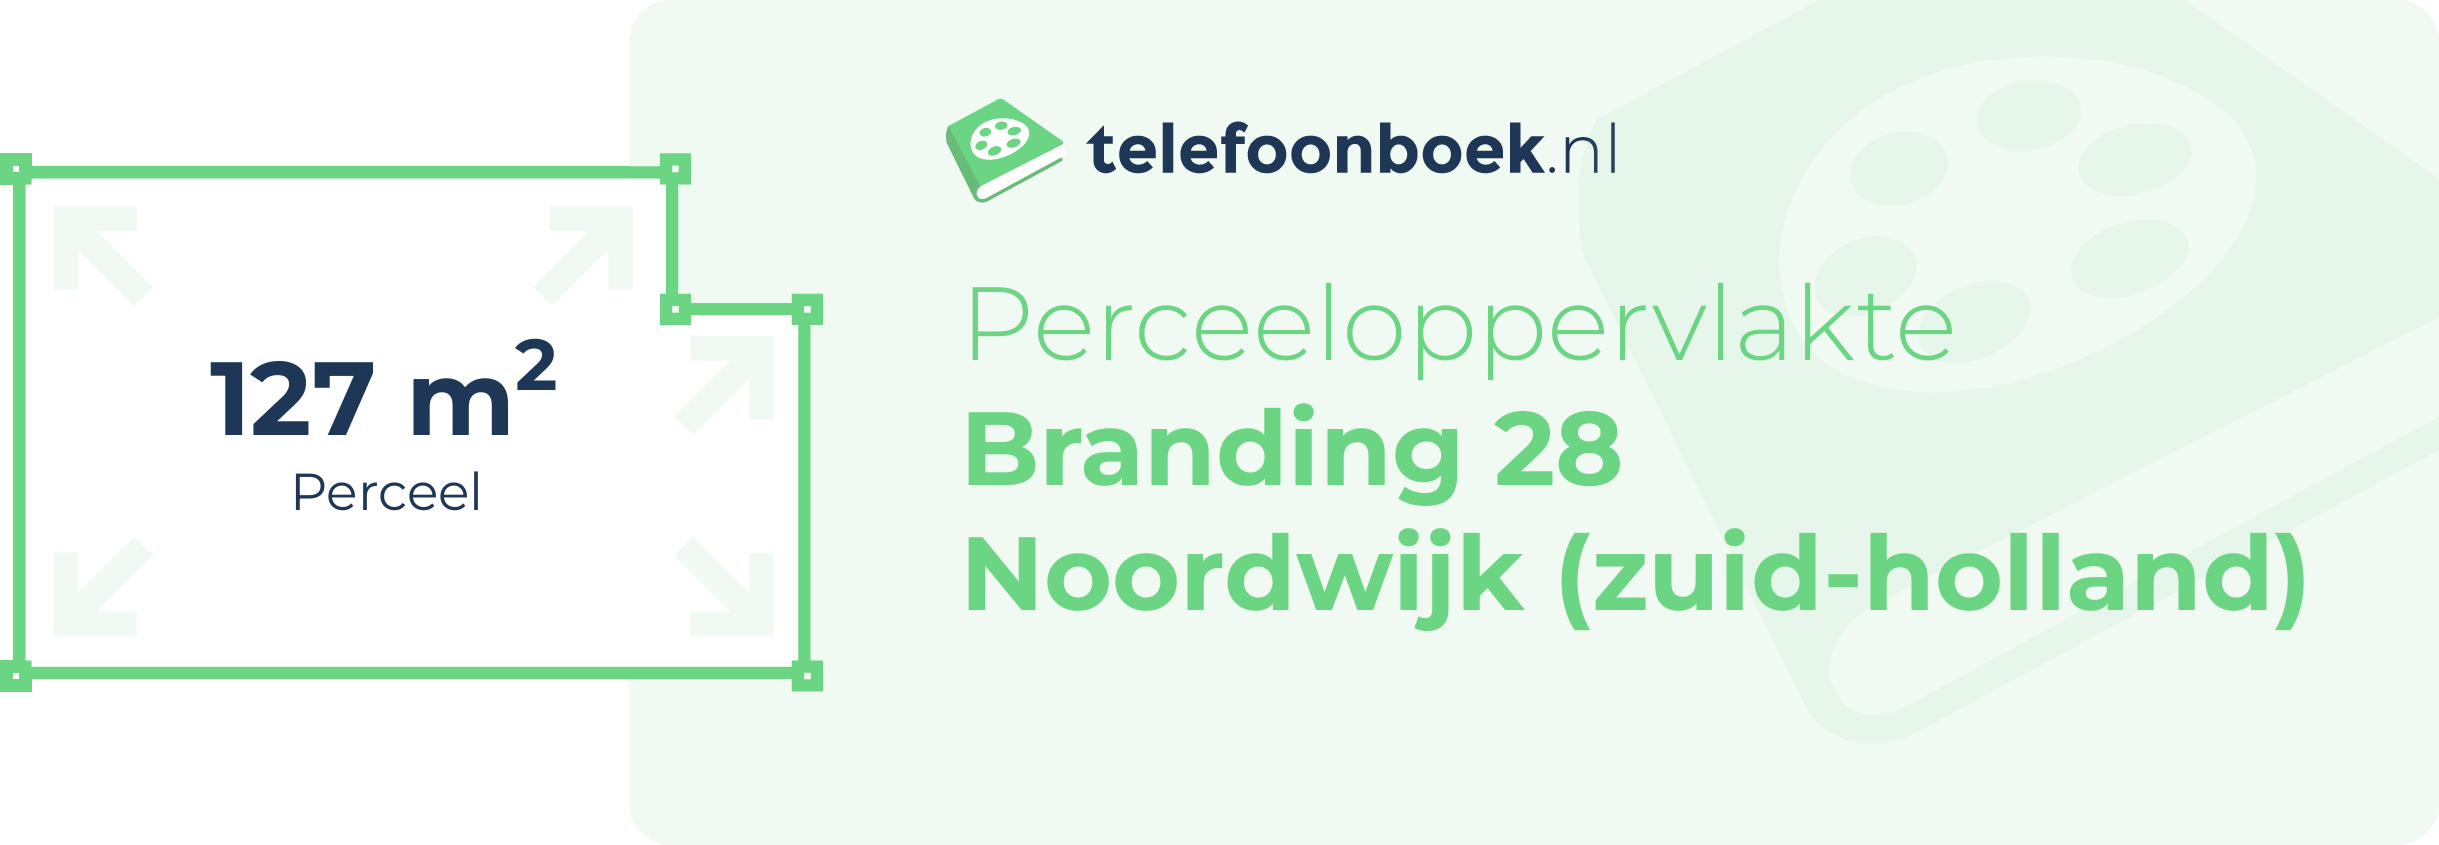 Perceeloppervlakte Branding 28 Noordwijk (Zuid-Holland)